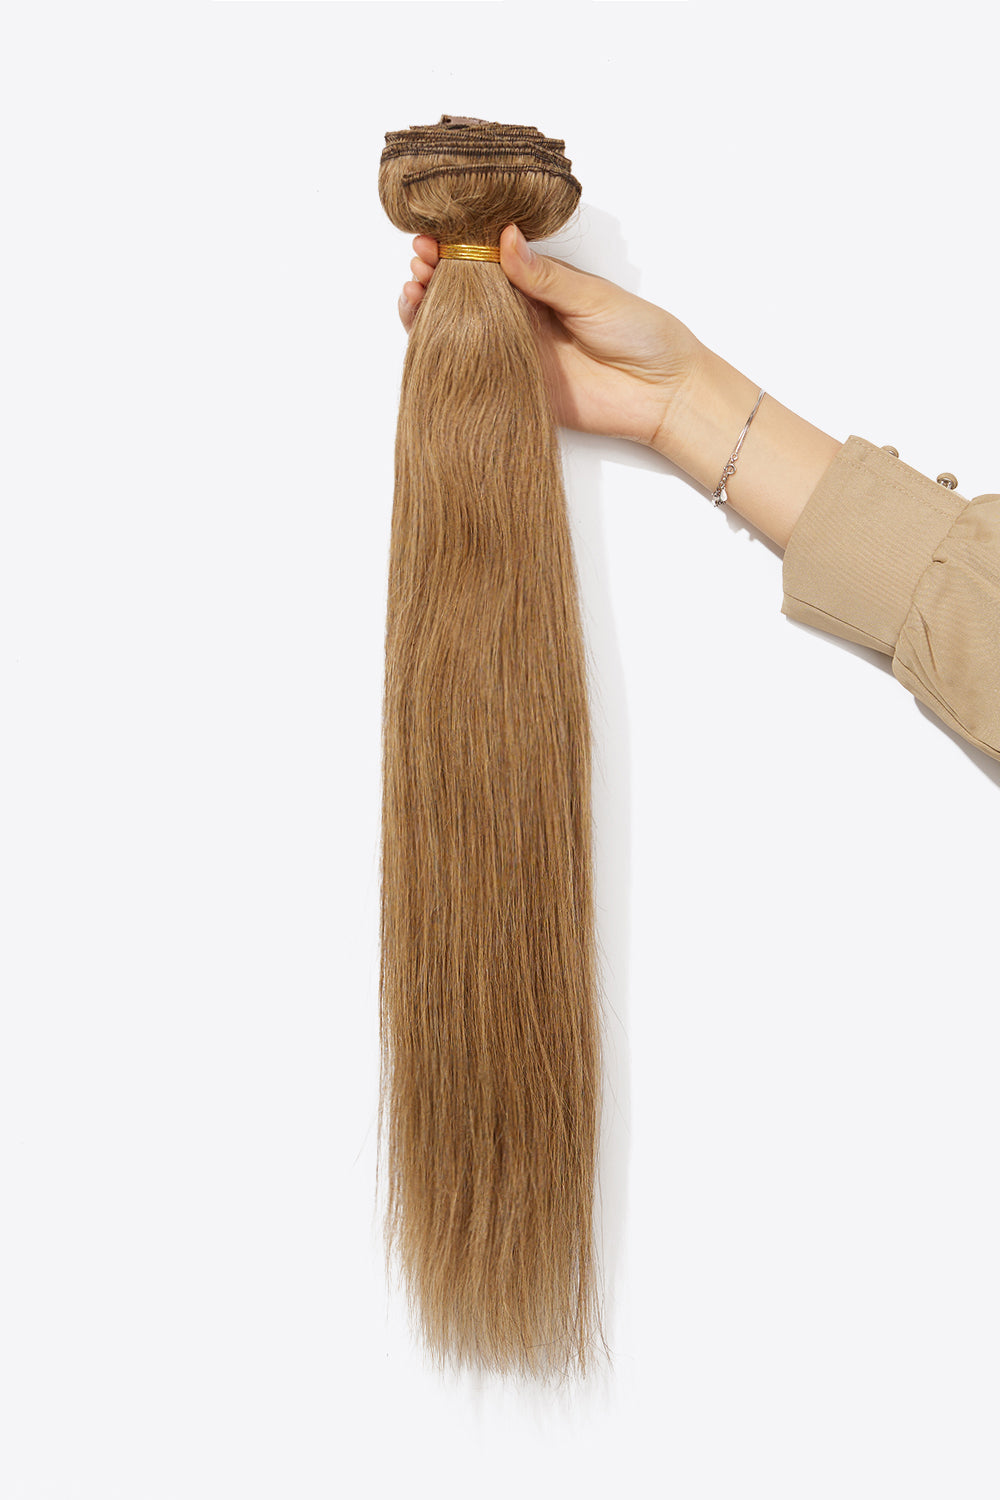 16'' 140g #10 Clip-in Hair Extensions Human Virgin Hair